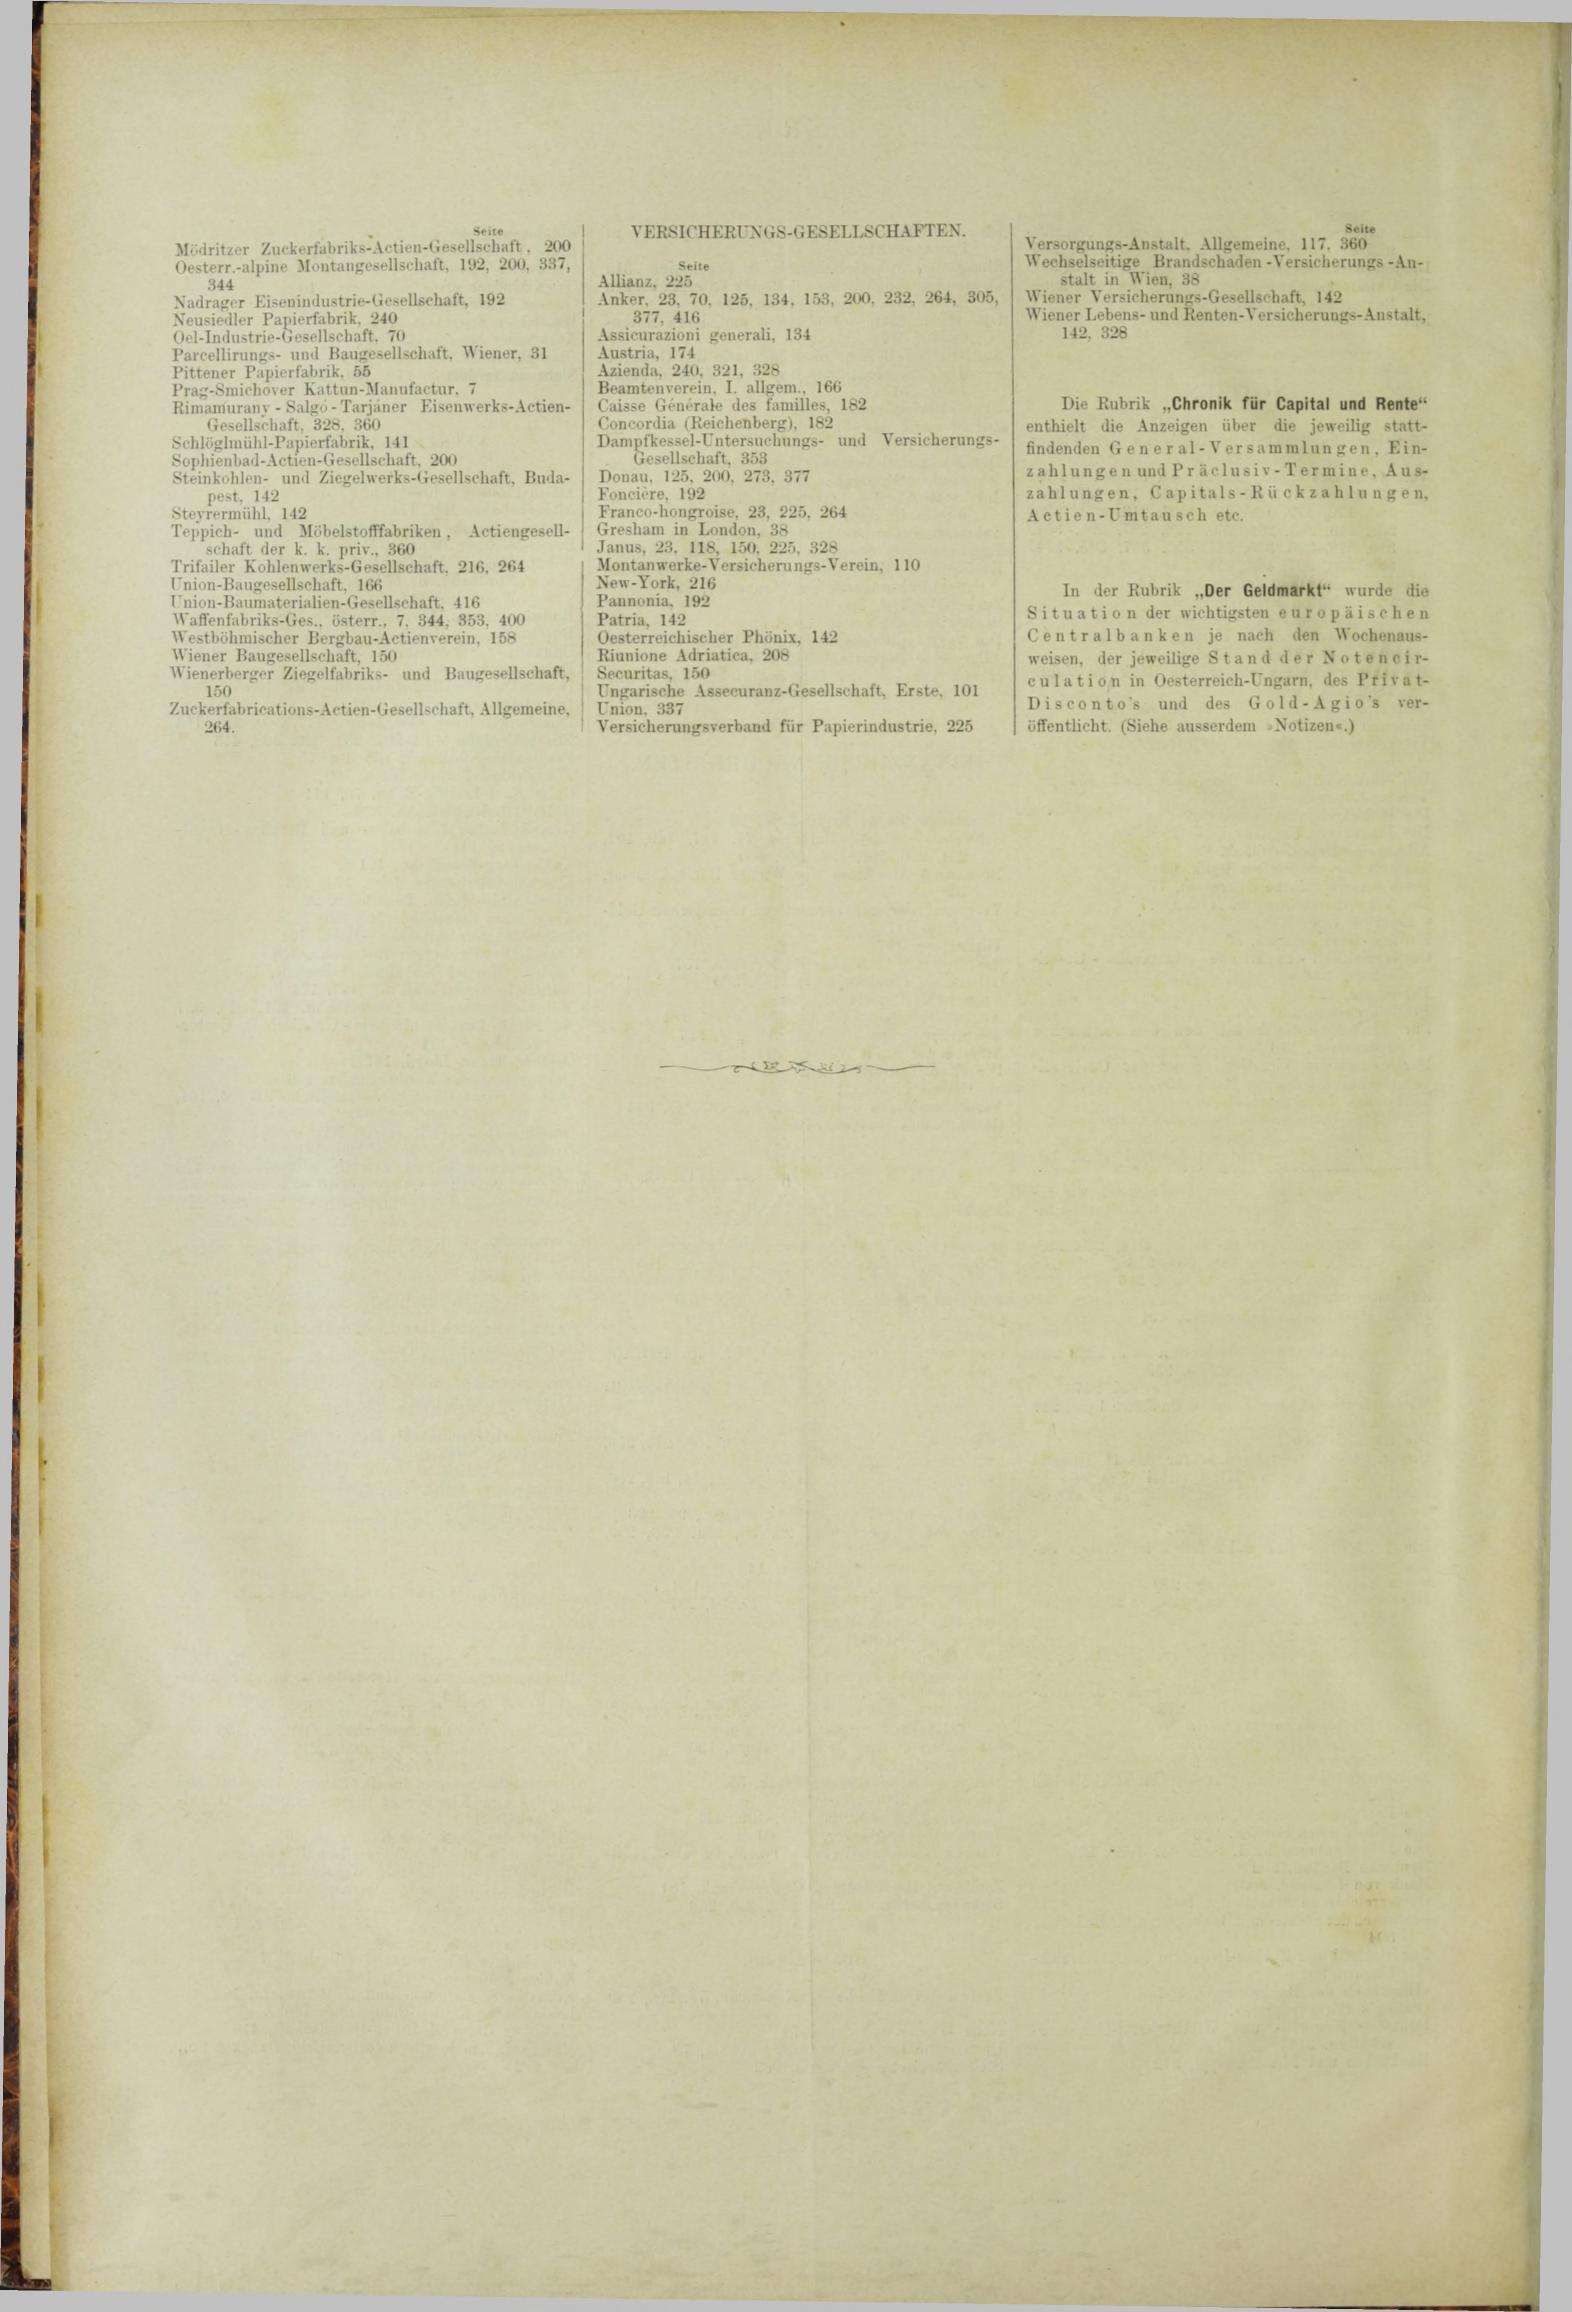 Der Tresor 22.03.1883 - Seite 12